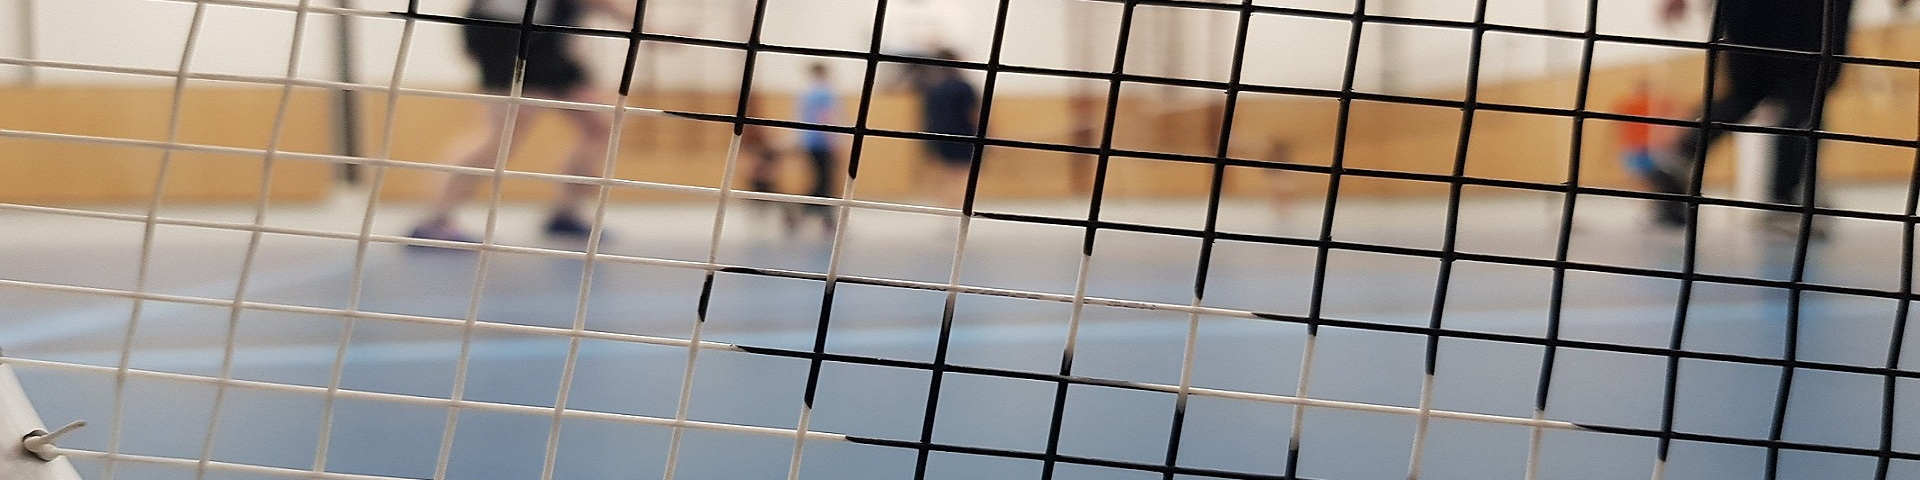 Badminton-Bezirksmeisterin aus Weiterstadt